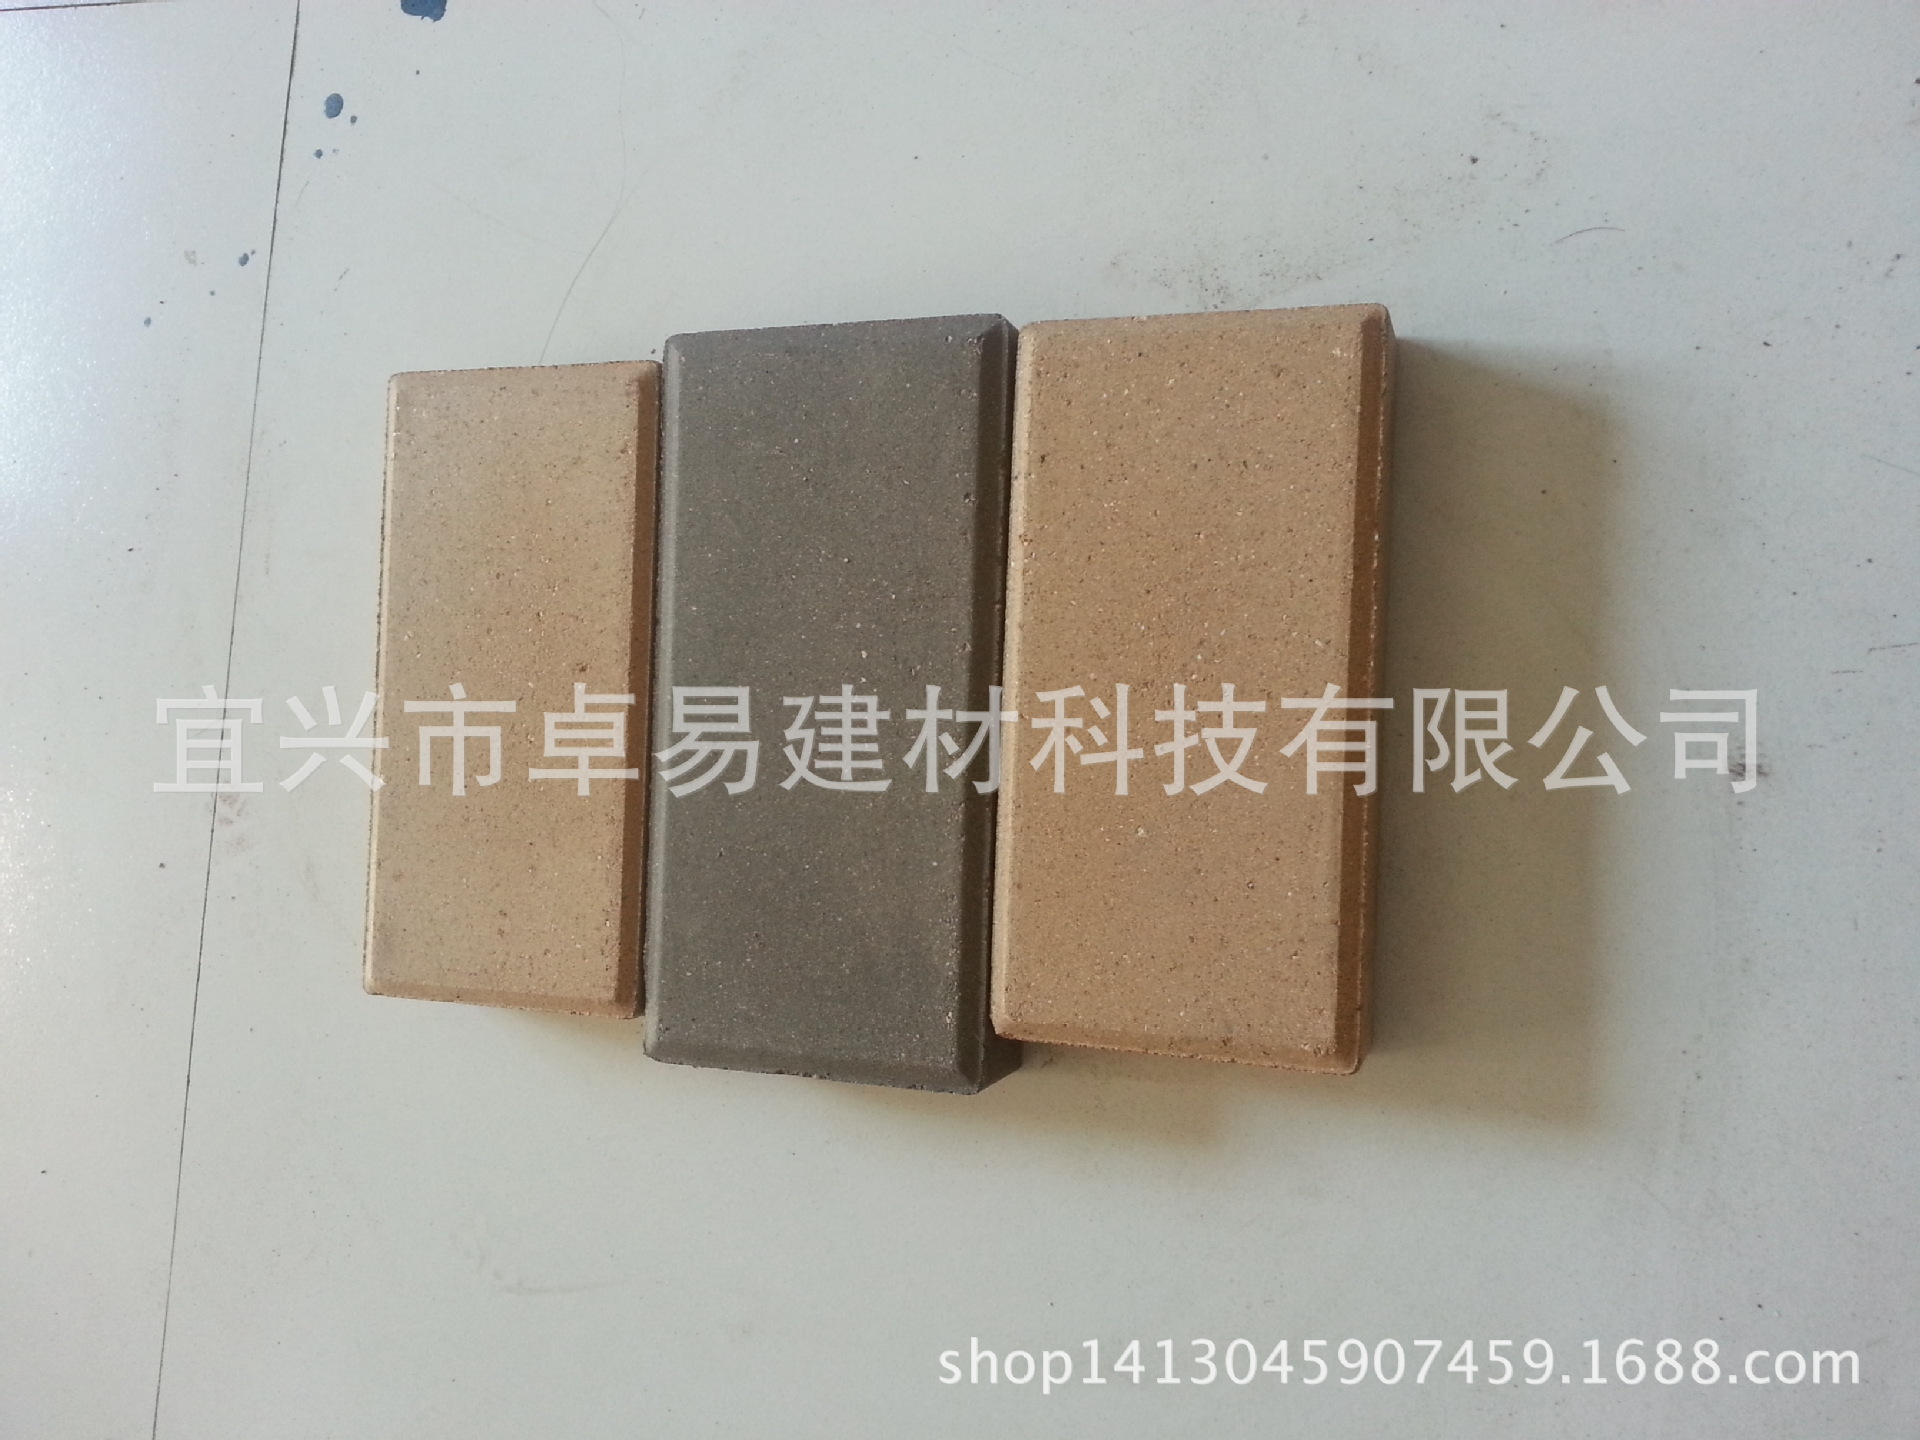 厂家专业生产优质陶土砖 烧结砖 广场砖 透水砖